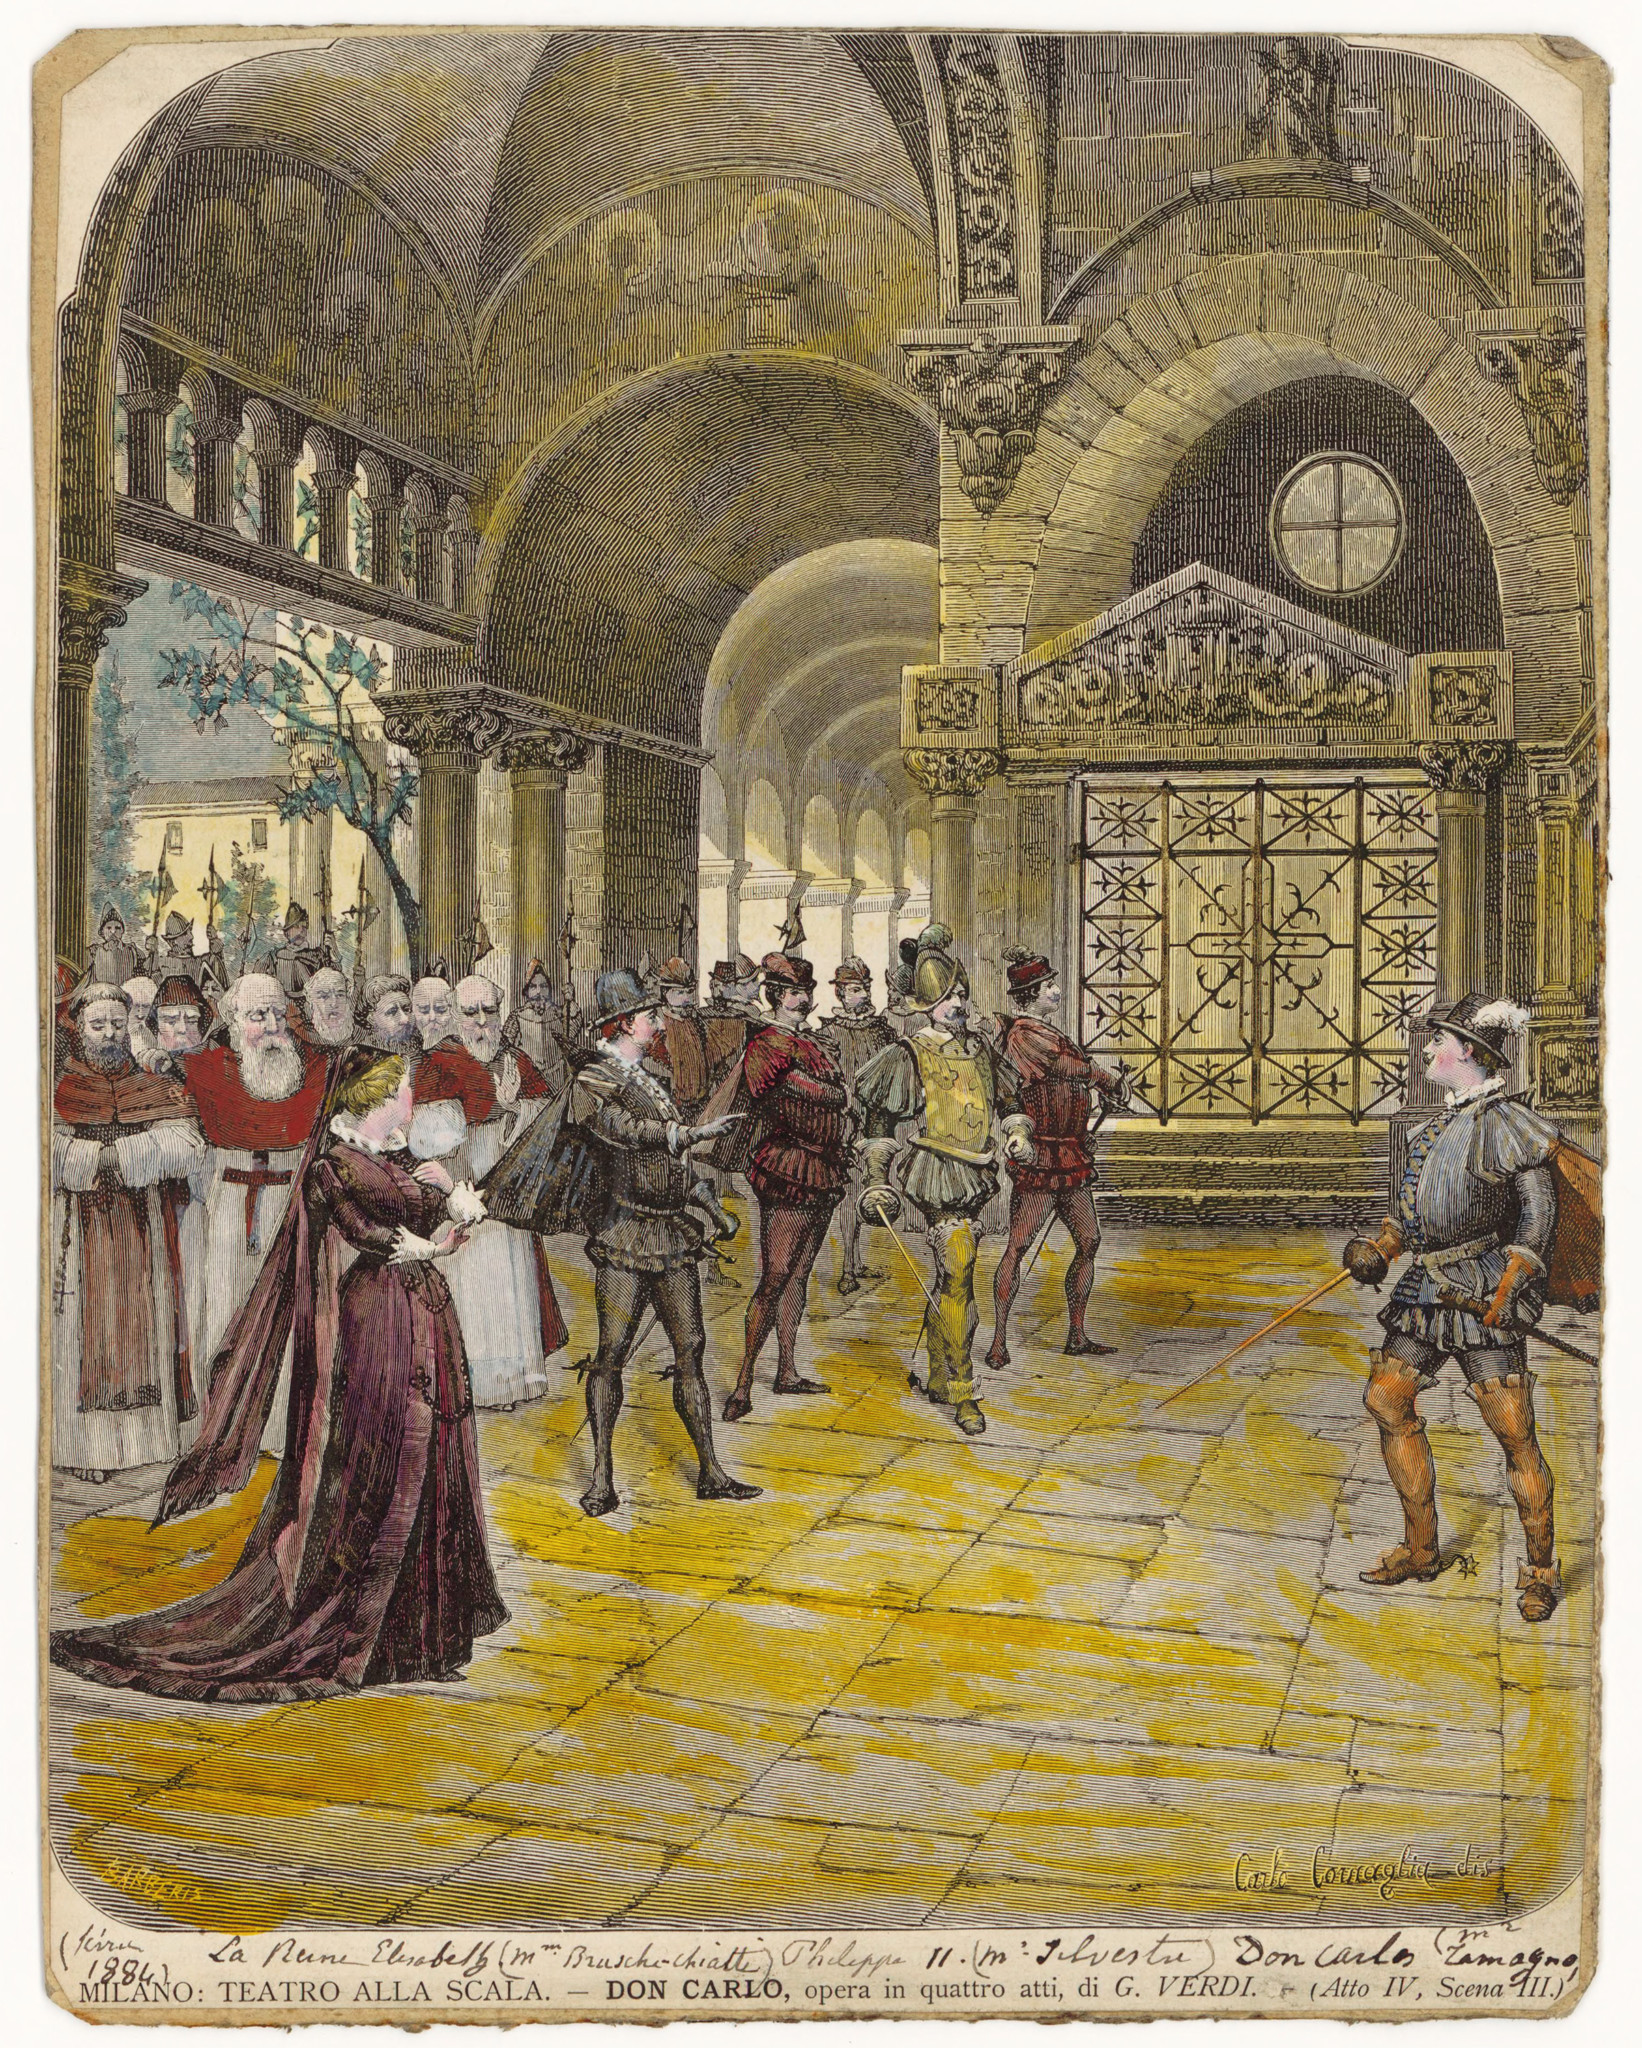 Bühnenbild zu Don Carlos. Zeichnung von Giuseppe Barberis zur Uraufführung der italienischen Fassung 1884 an der Mailänder "Scala"